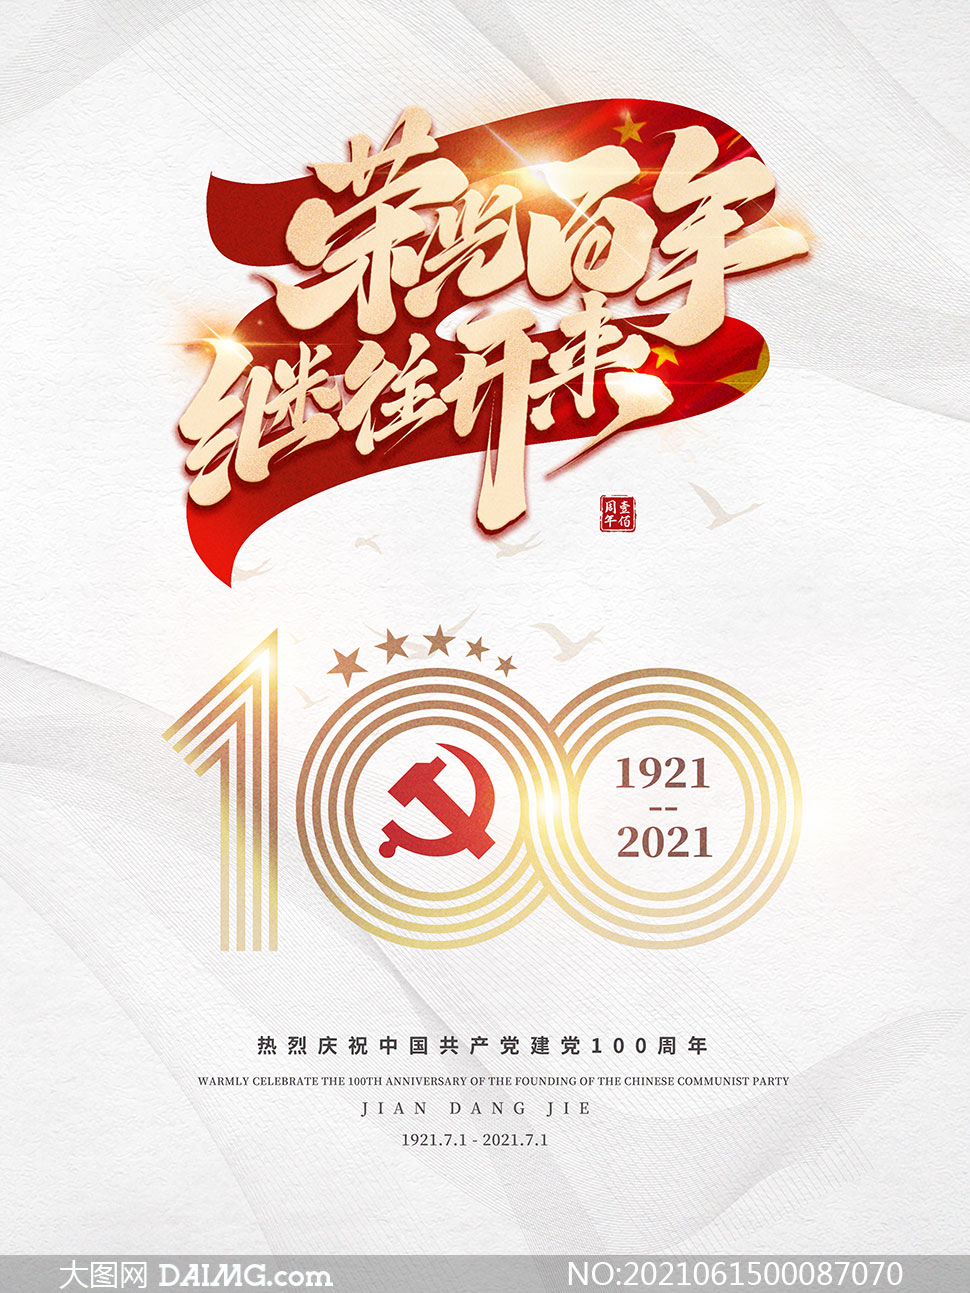 党的百年峥嵘岁月建党节海报设计psd素材